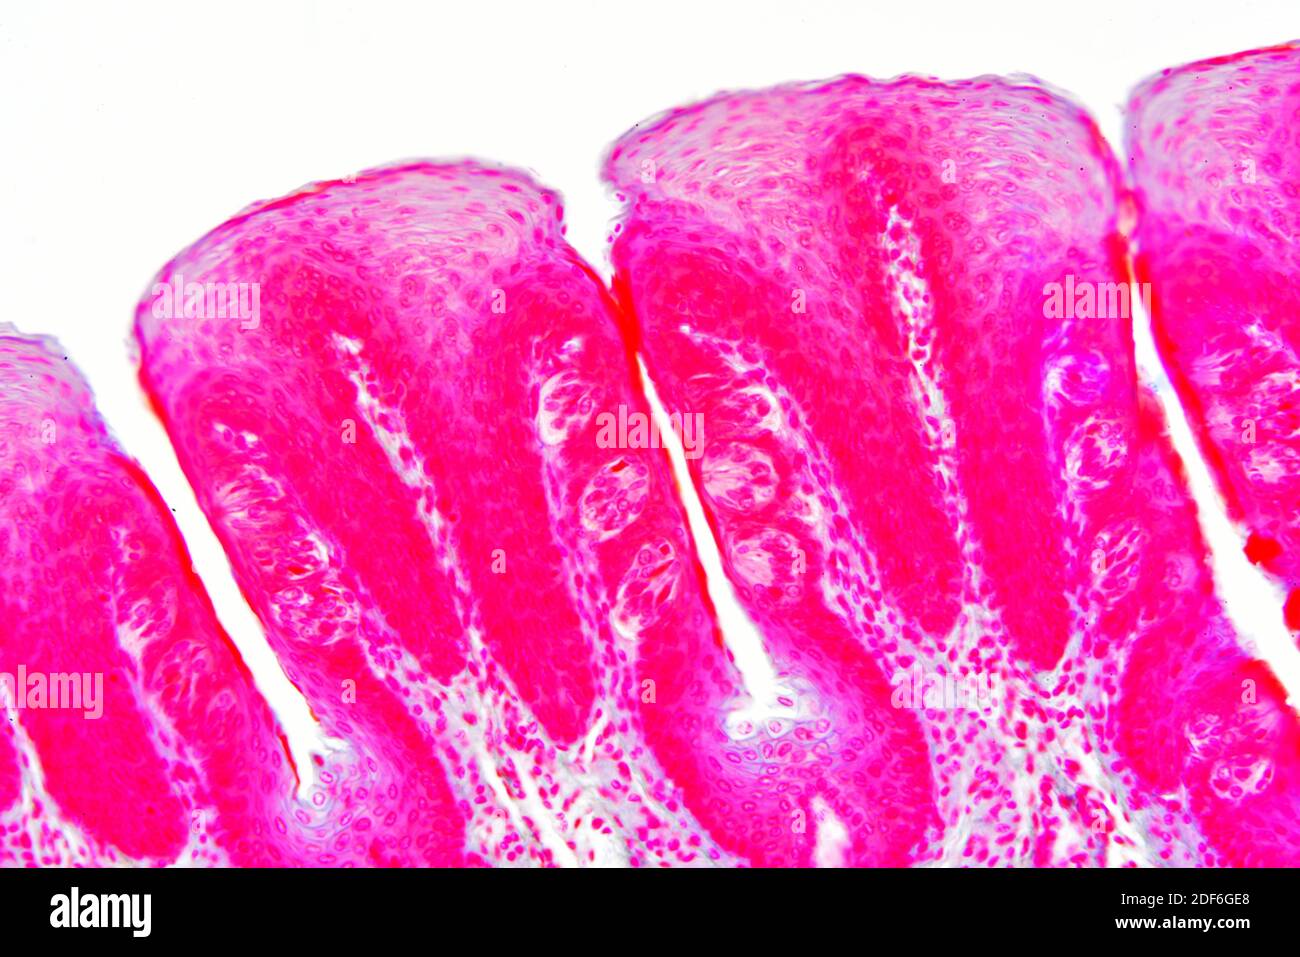 Sección de la lengua que muestra las papilas gustativas y el epitelio. Microscopio óptico X200. Foto de stock